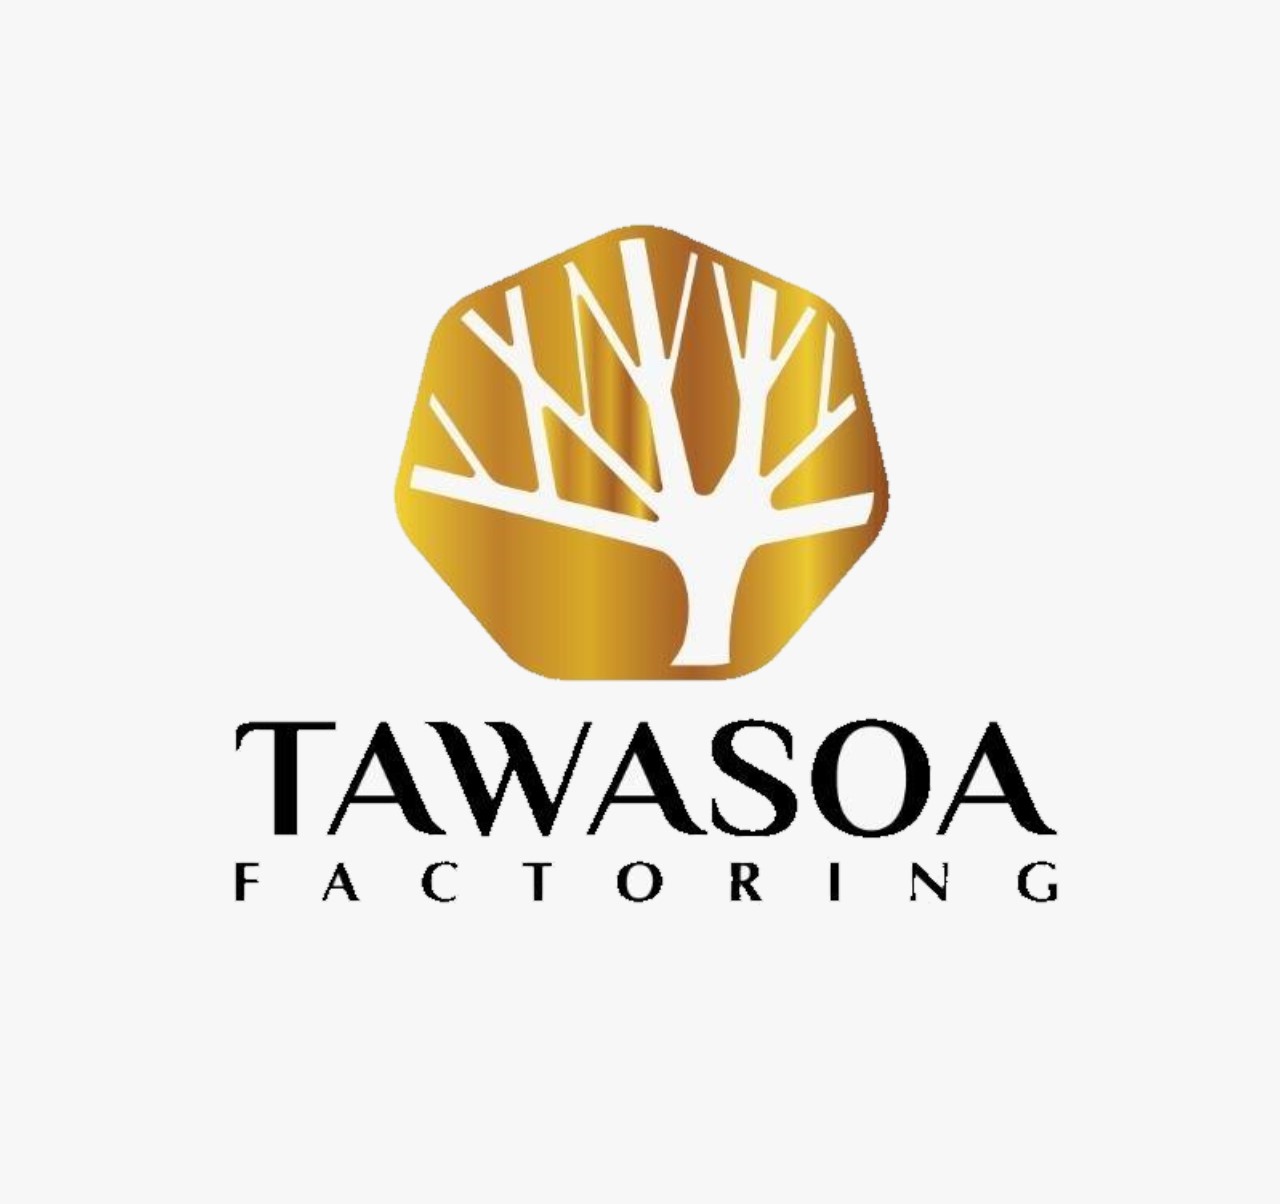 Tawasoa